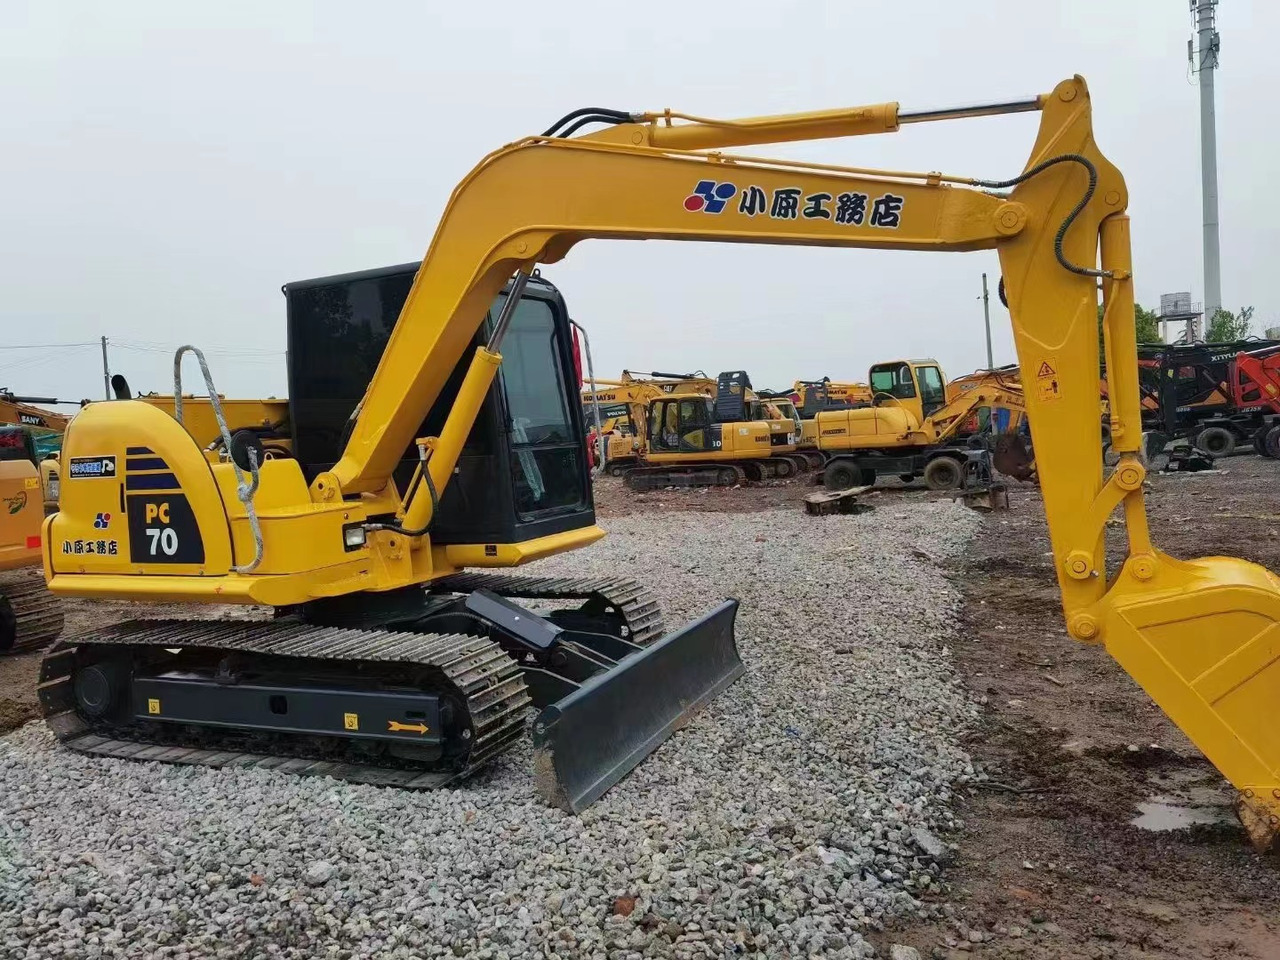 크롤러 굴삭기 Hot selling !!! KOMATSU used hydraulic crawler excavator PC70models also on sale welcome to inquire : 사진 2